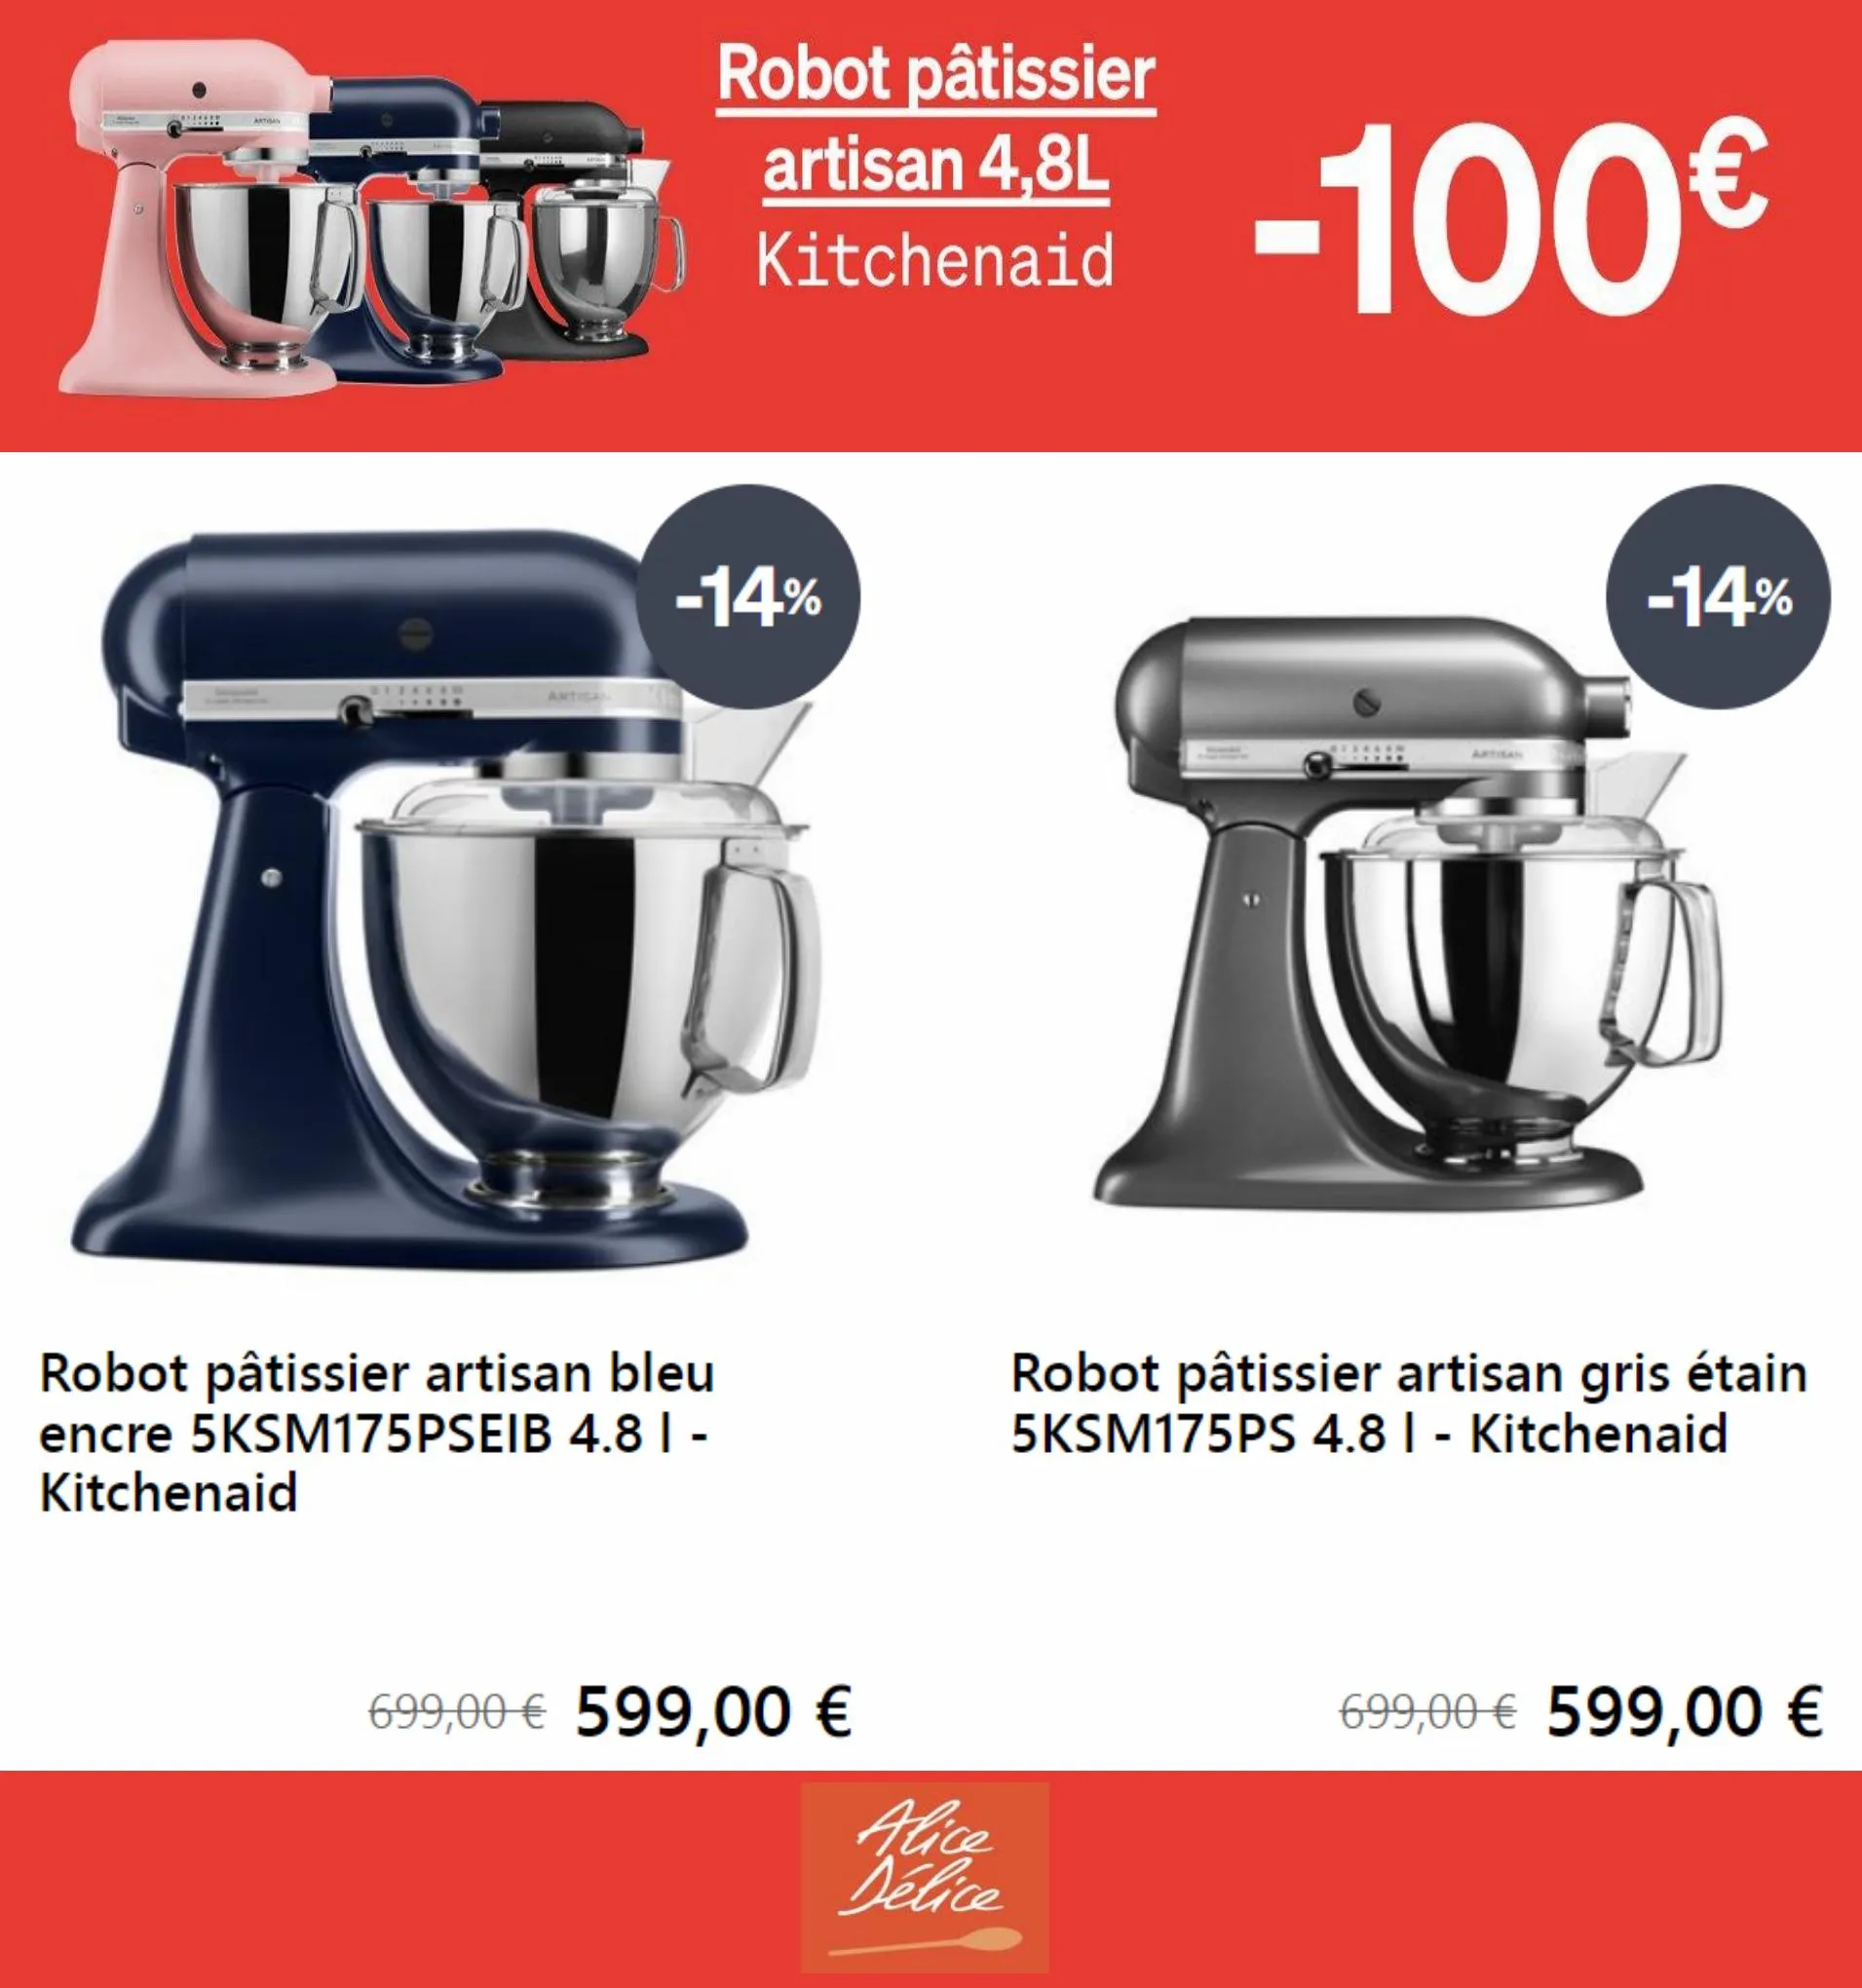 Catalogue Robot pâtisier artisan 4,8L -100€, page 00003